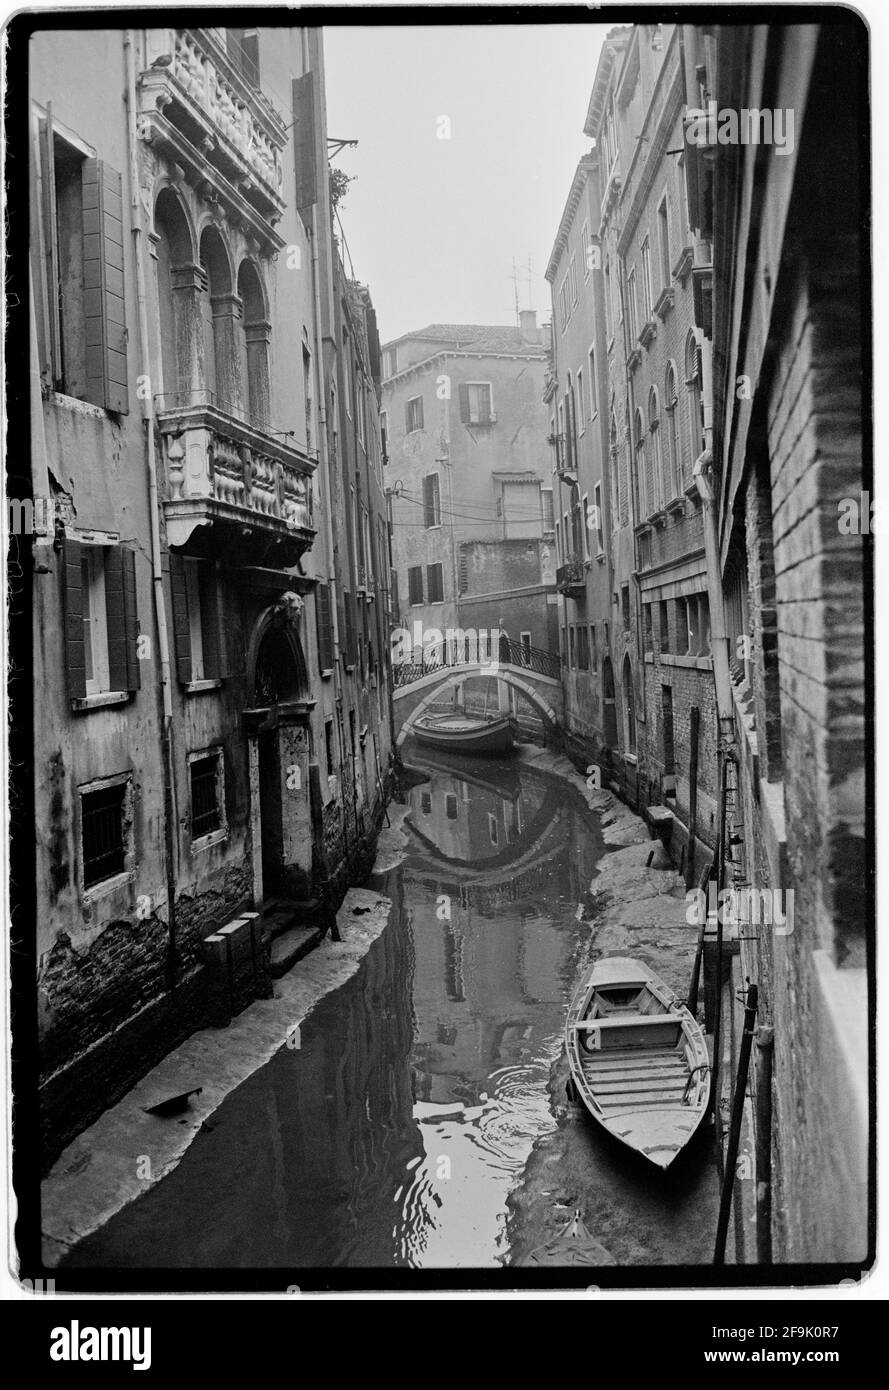 Venezia in Veneto Febbraio 1982 Venezia; Venezia: Venesia o Venexia è una città del nord-est Italia e capitale del Veneto. E' costruito su un gruppo di 118 piccole isole separate da canali e collegate da oltre 400 ponti Foto Stock